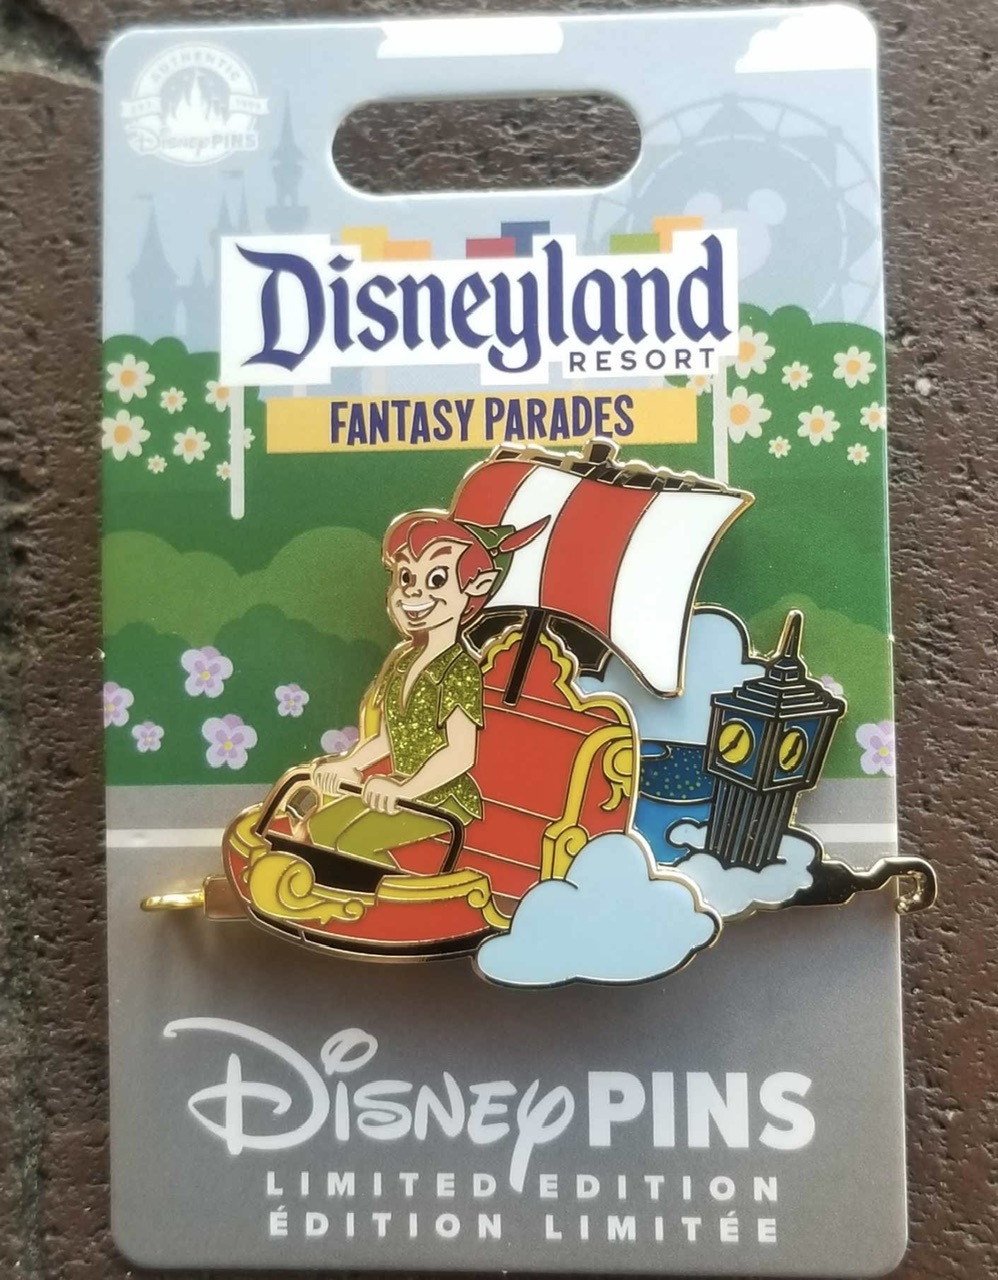 Peter Pan’s Flight Disneyland Parades Pin